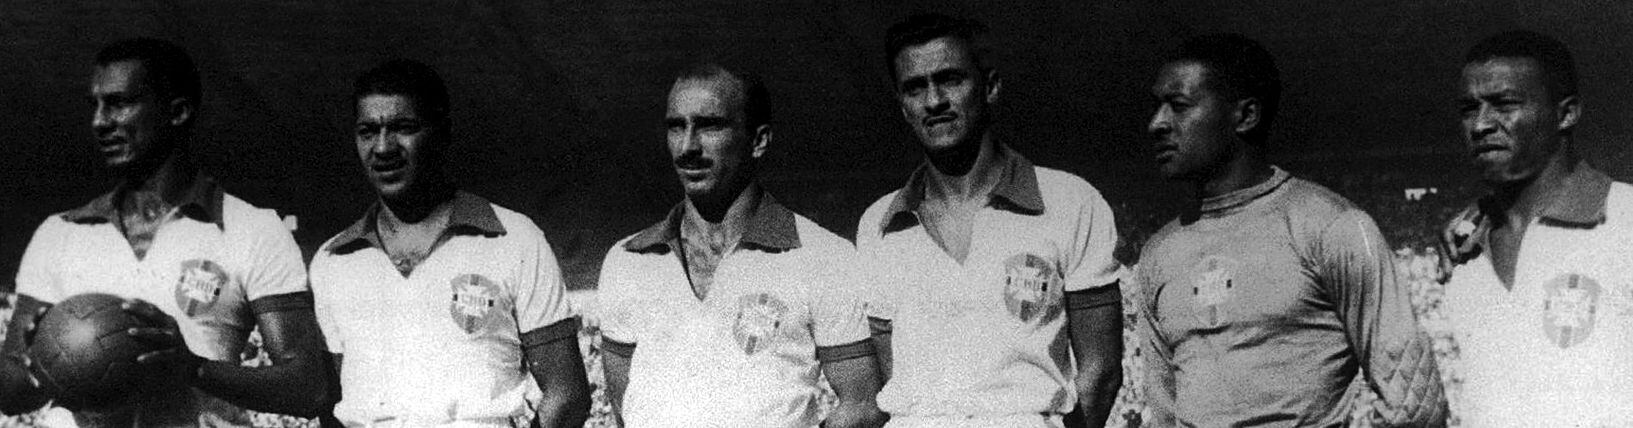 Juvenal (segundo desde la izquierda), Barbosa y Bigode (los dos últimos) en la formación del equipo brasileño que enfrentó a Uruguay en el 'Maracanazo'